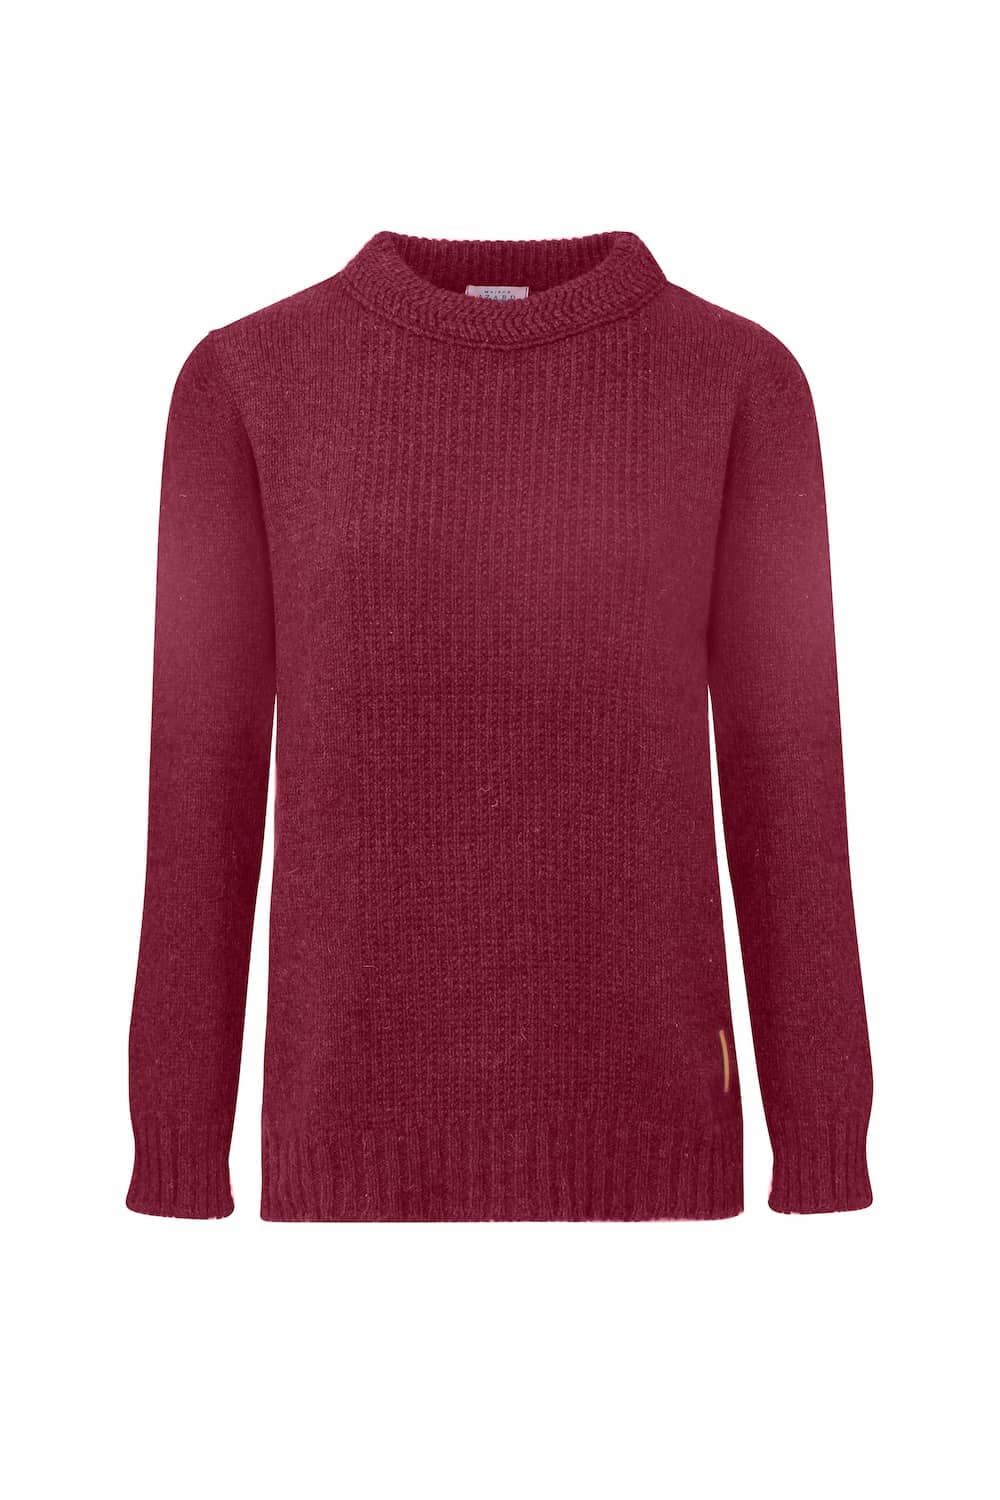 pull femme jersey éthique et responsable rouge bordeaux, en laine des Pyrénées et coton recyclé, made in France, maison izard